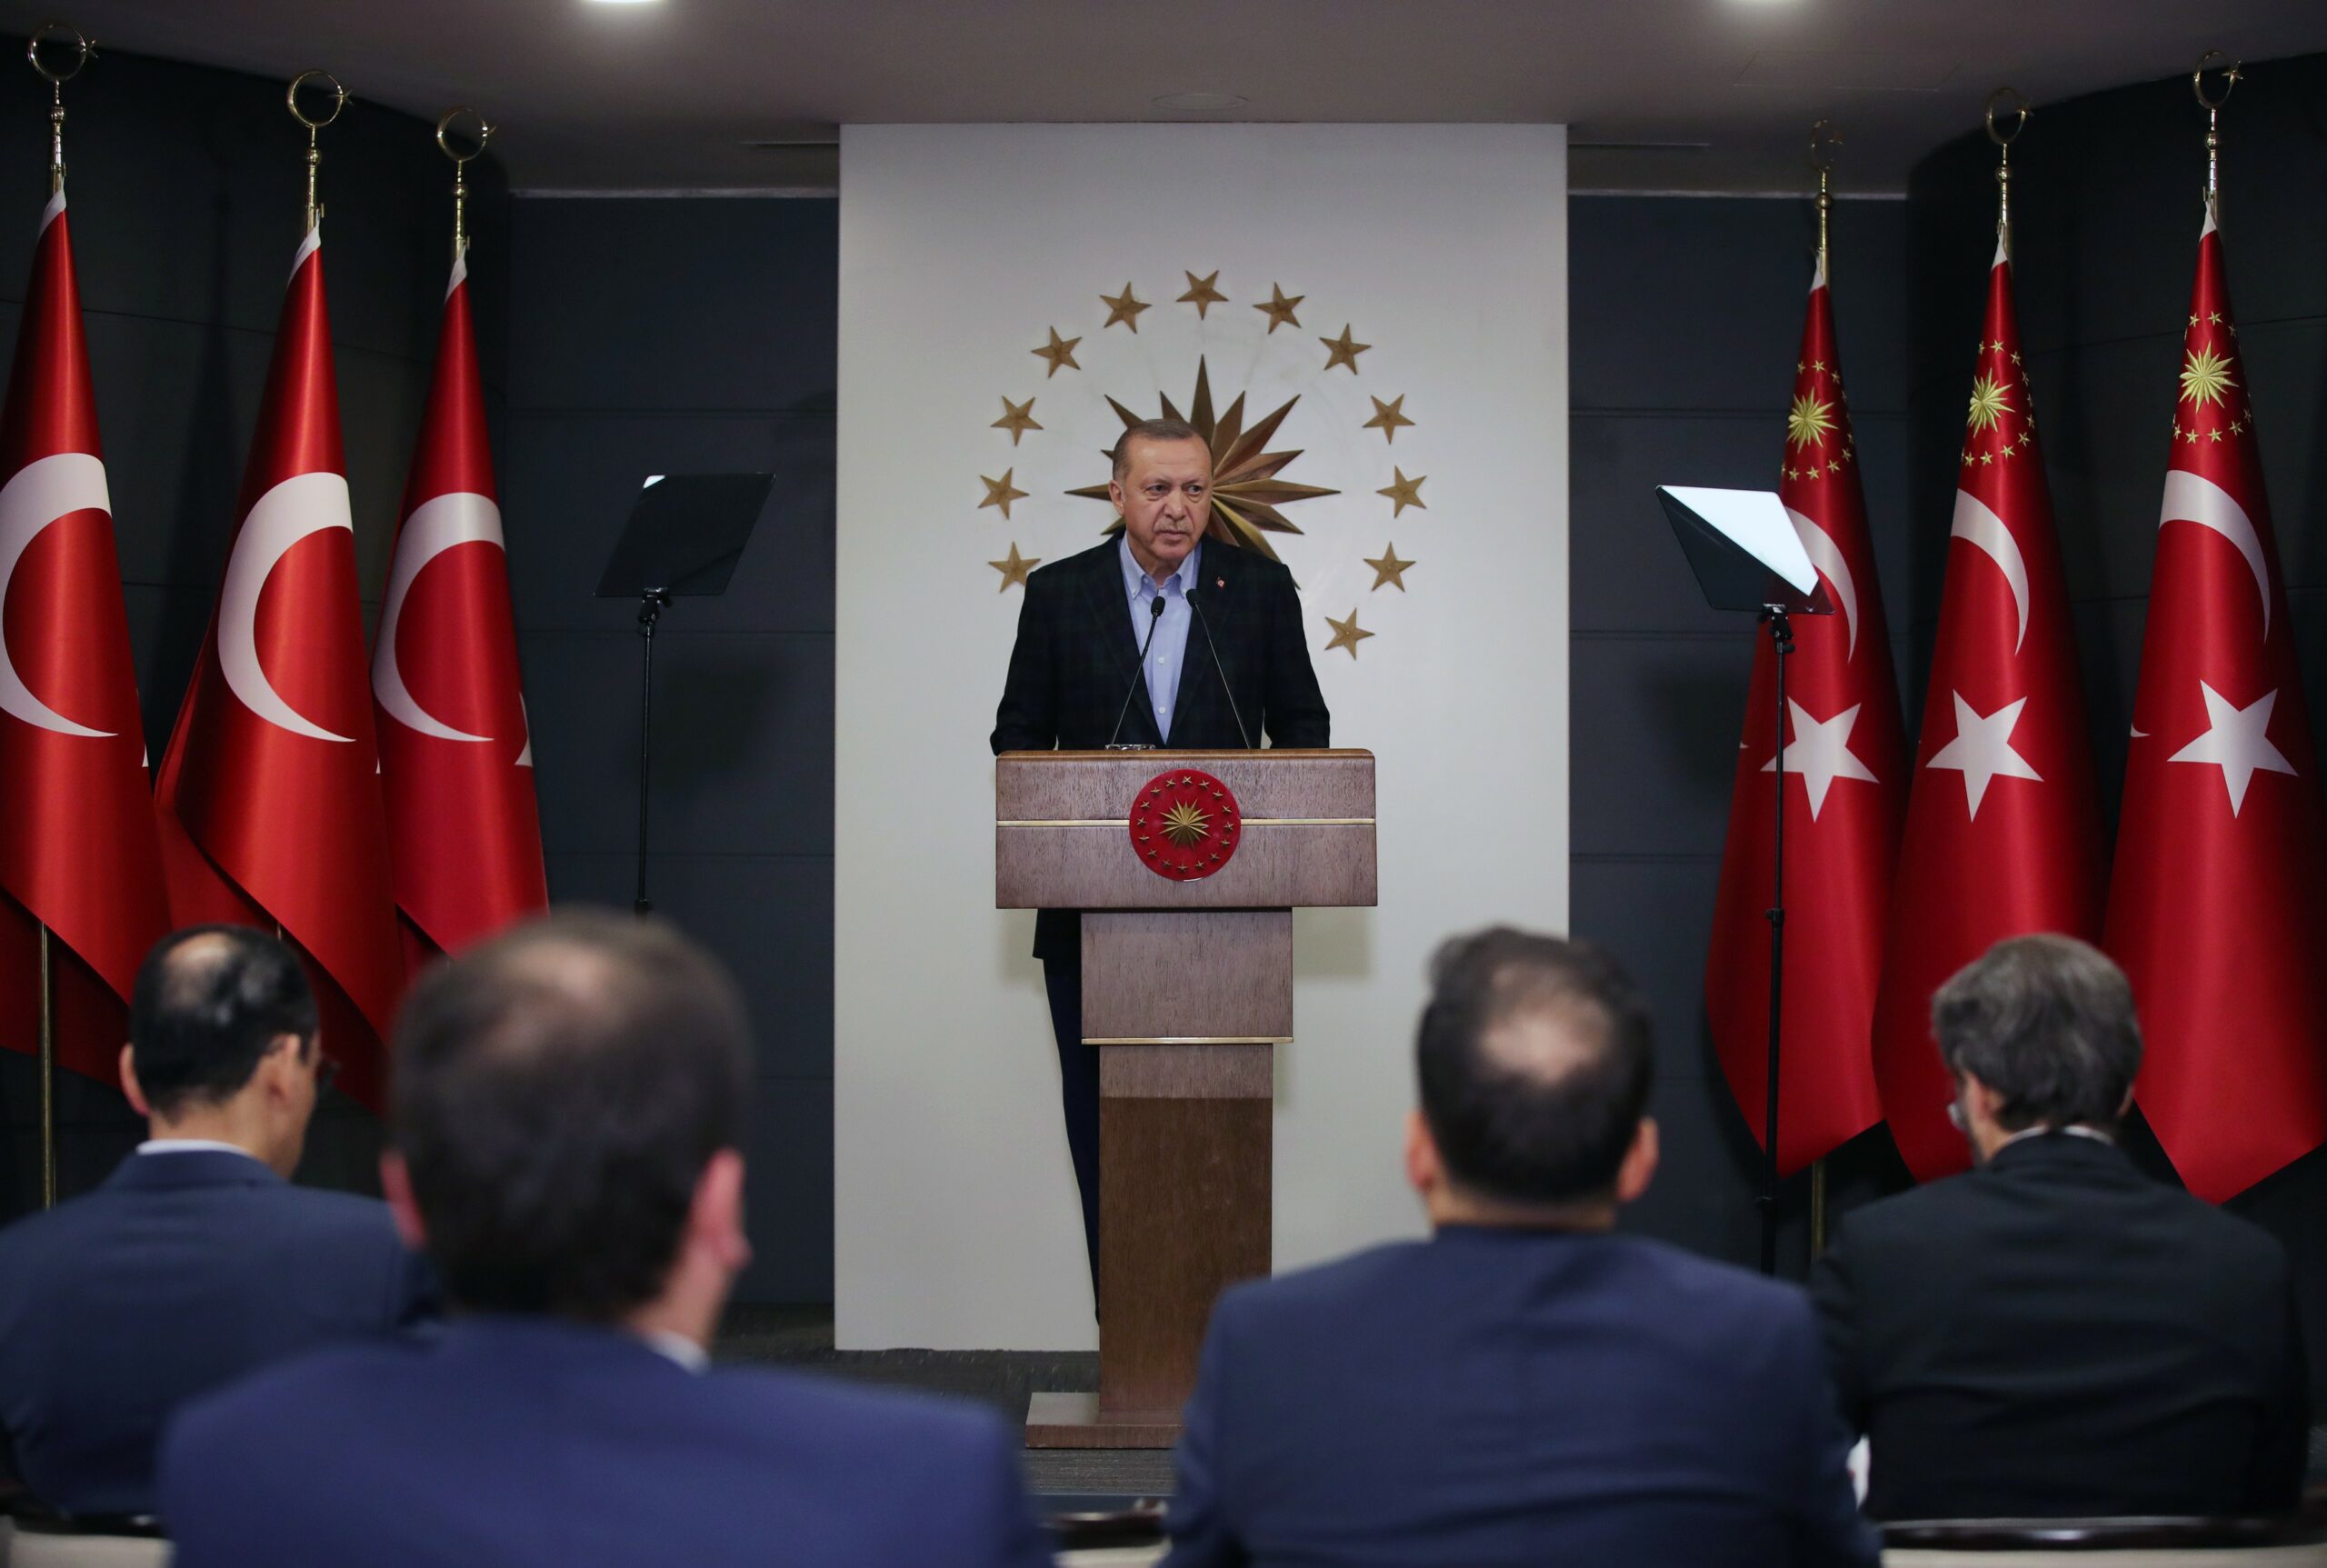 Cumhurbaşkanı Erdoğan, 3600 ek gösterge düzenlemesinin ayrıntılarını açıkladı